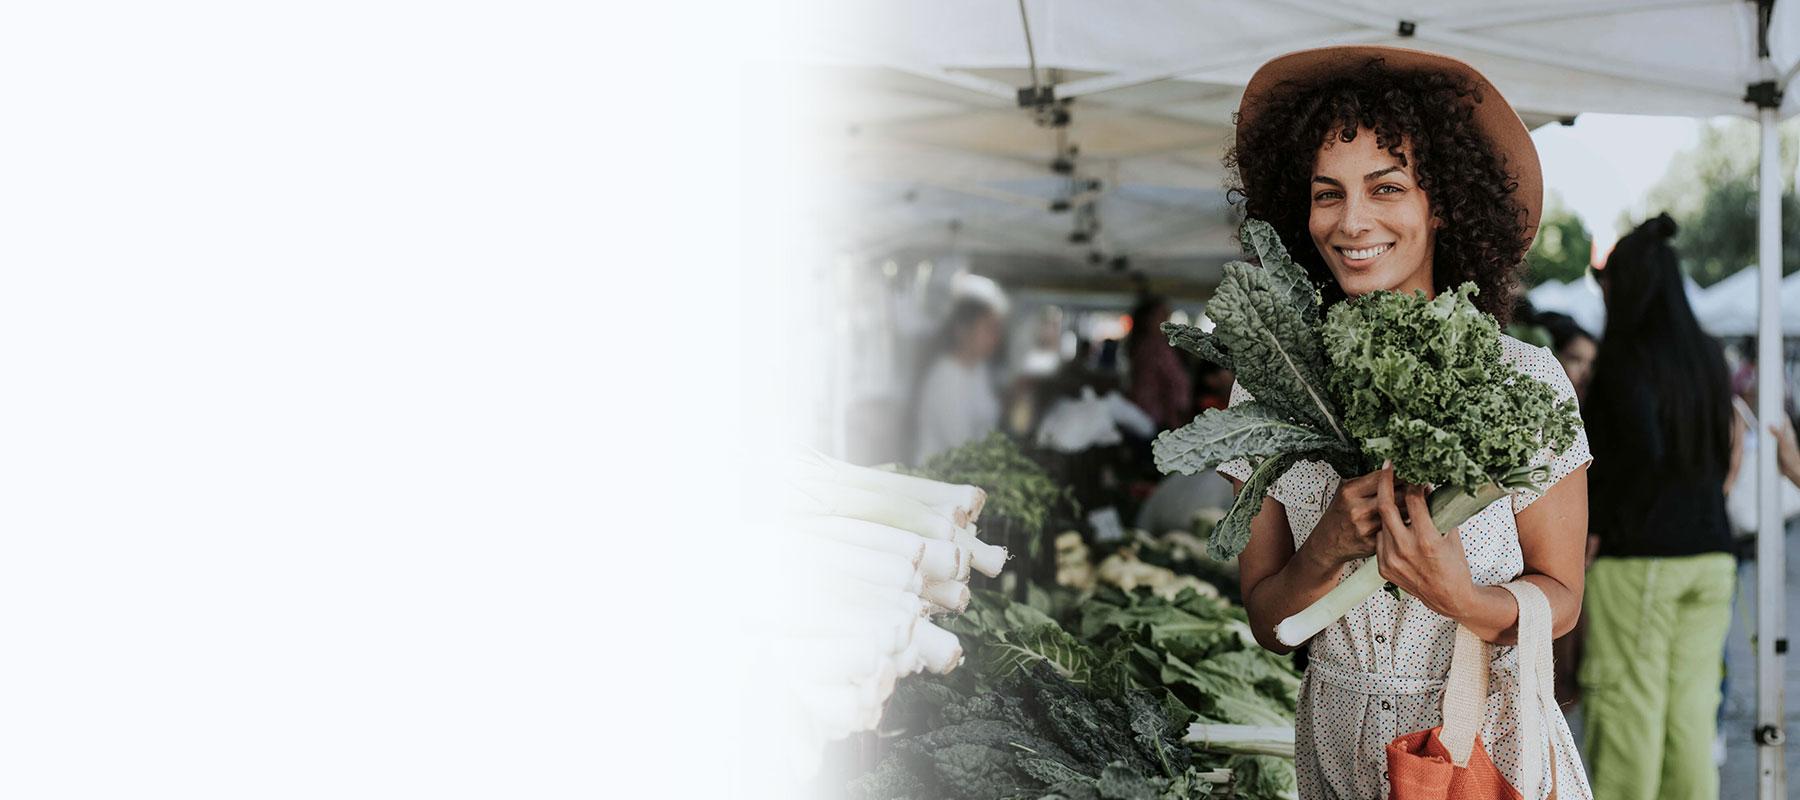 Eine Frau steht auf dem Wochenmarkt und hält grünes Gemüse in den Händen